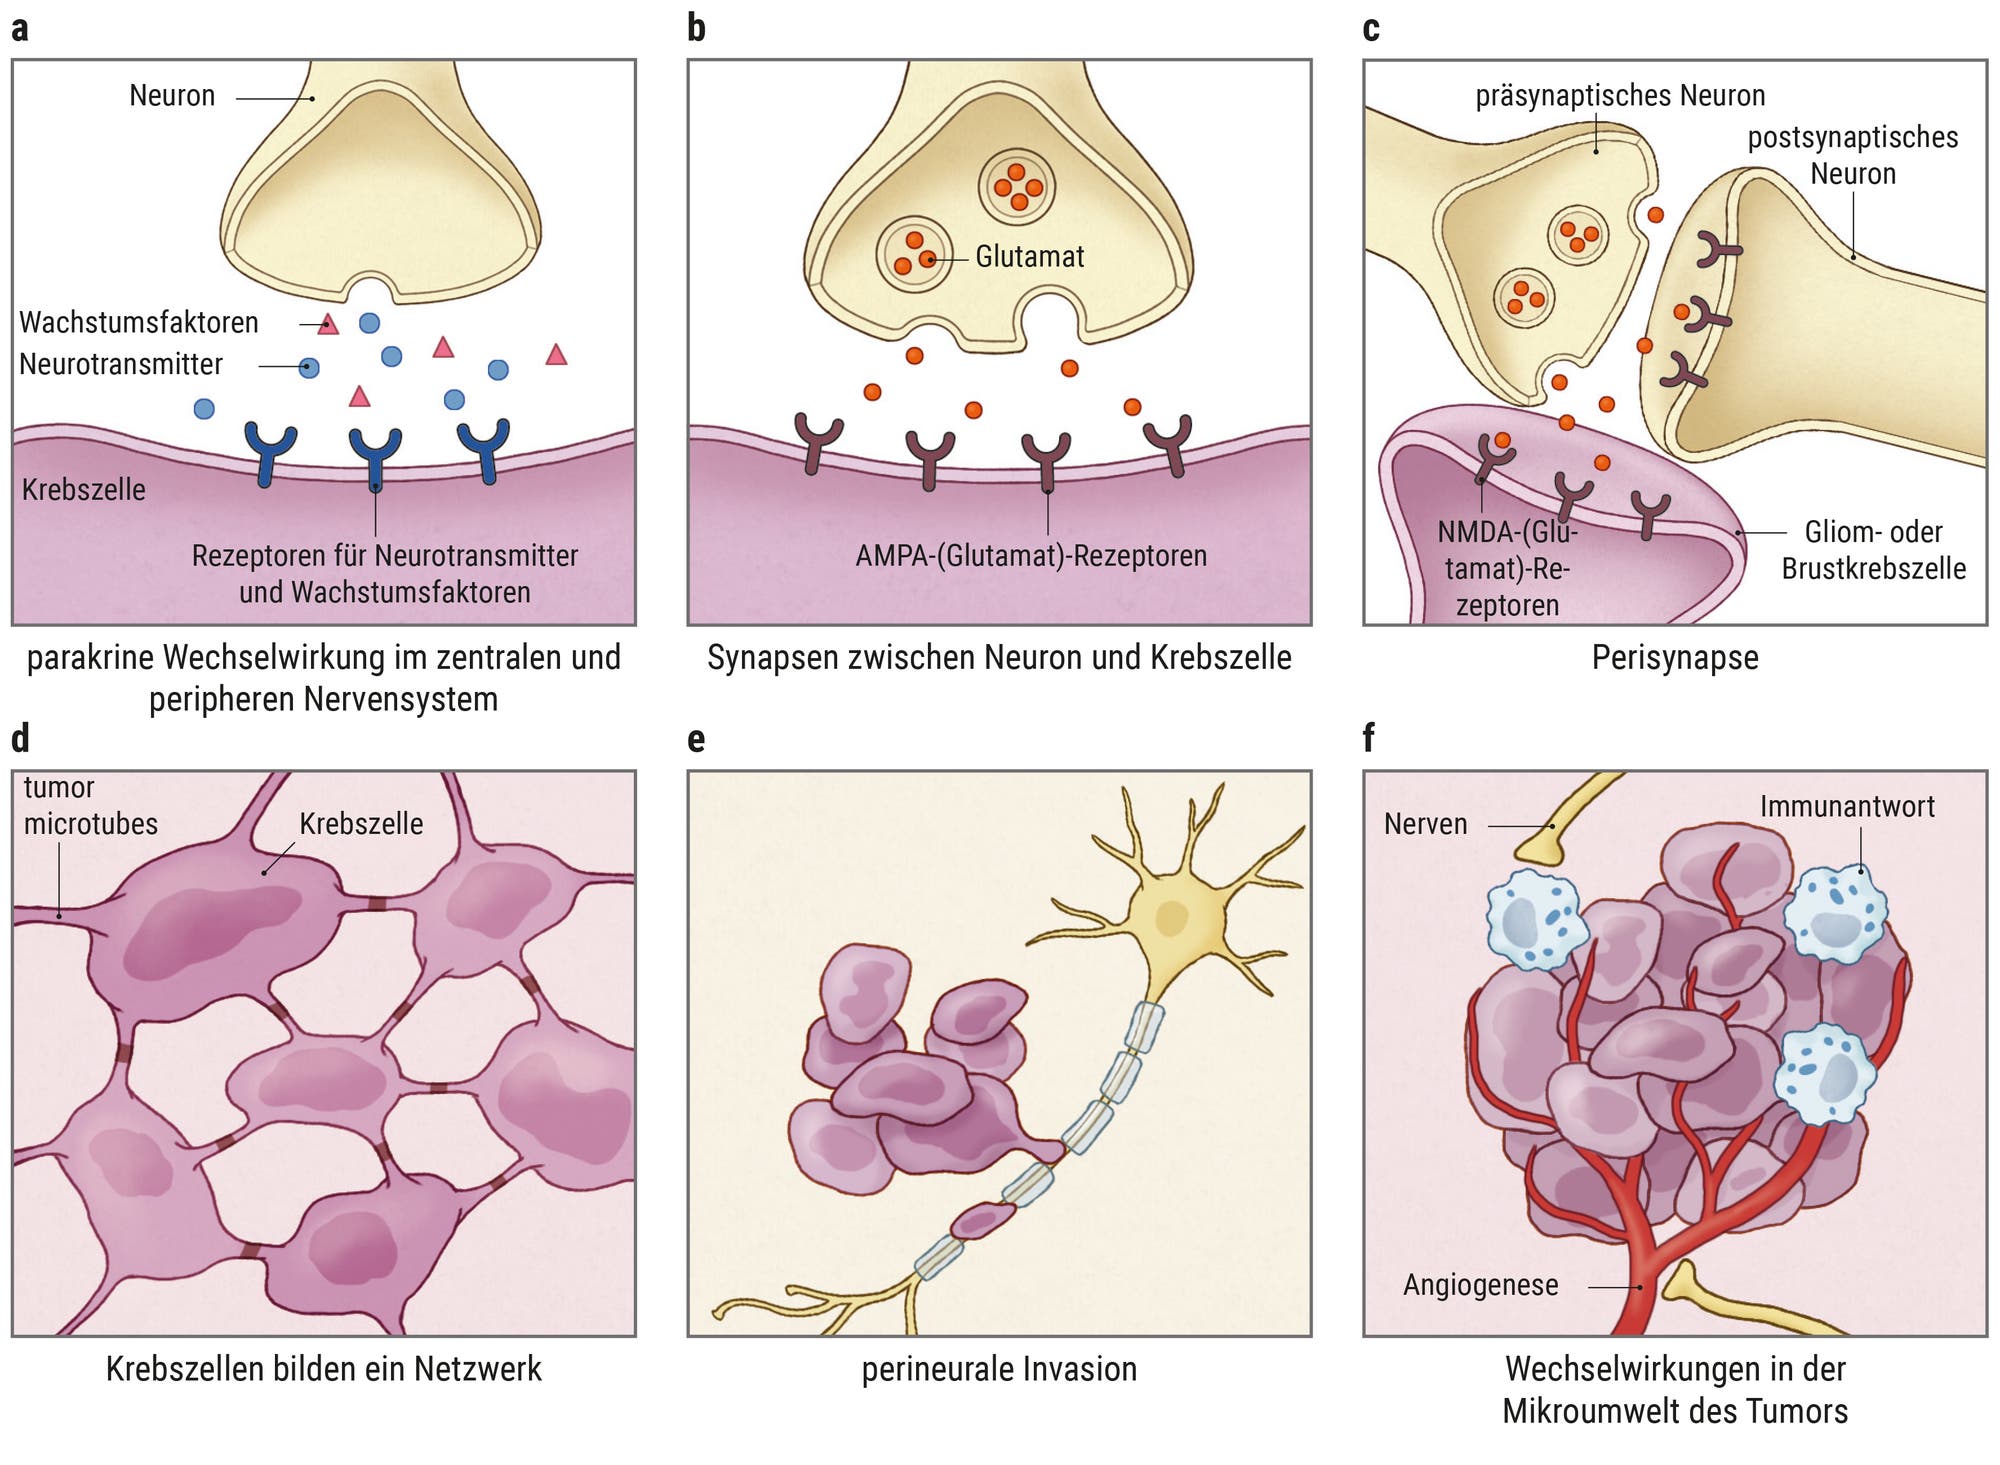 Infografik: die parakrine Wechselwirkung im zentralen und peripheren Nervensystem, die zur Entstehung eines Tumors führt.